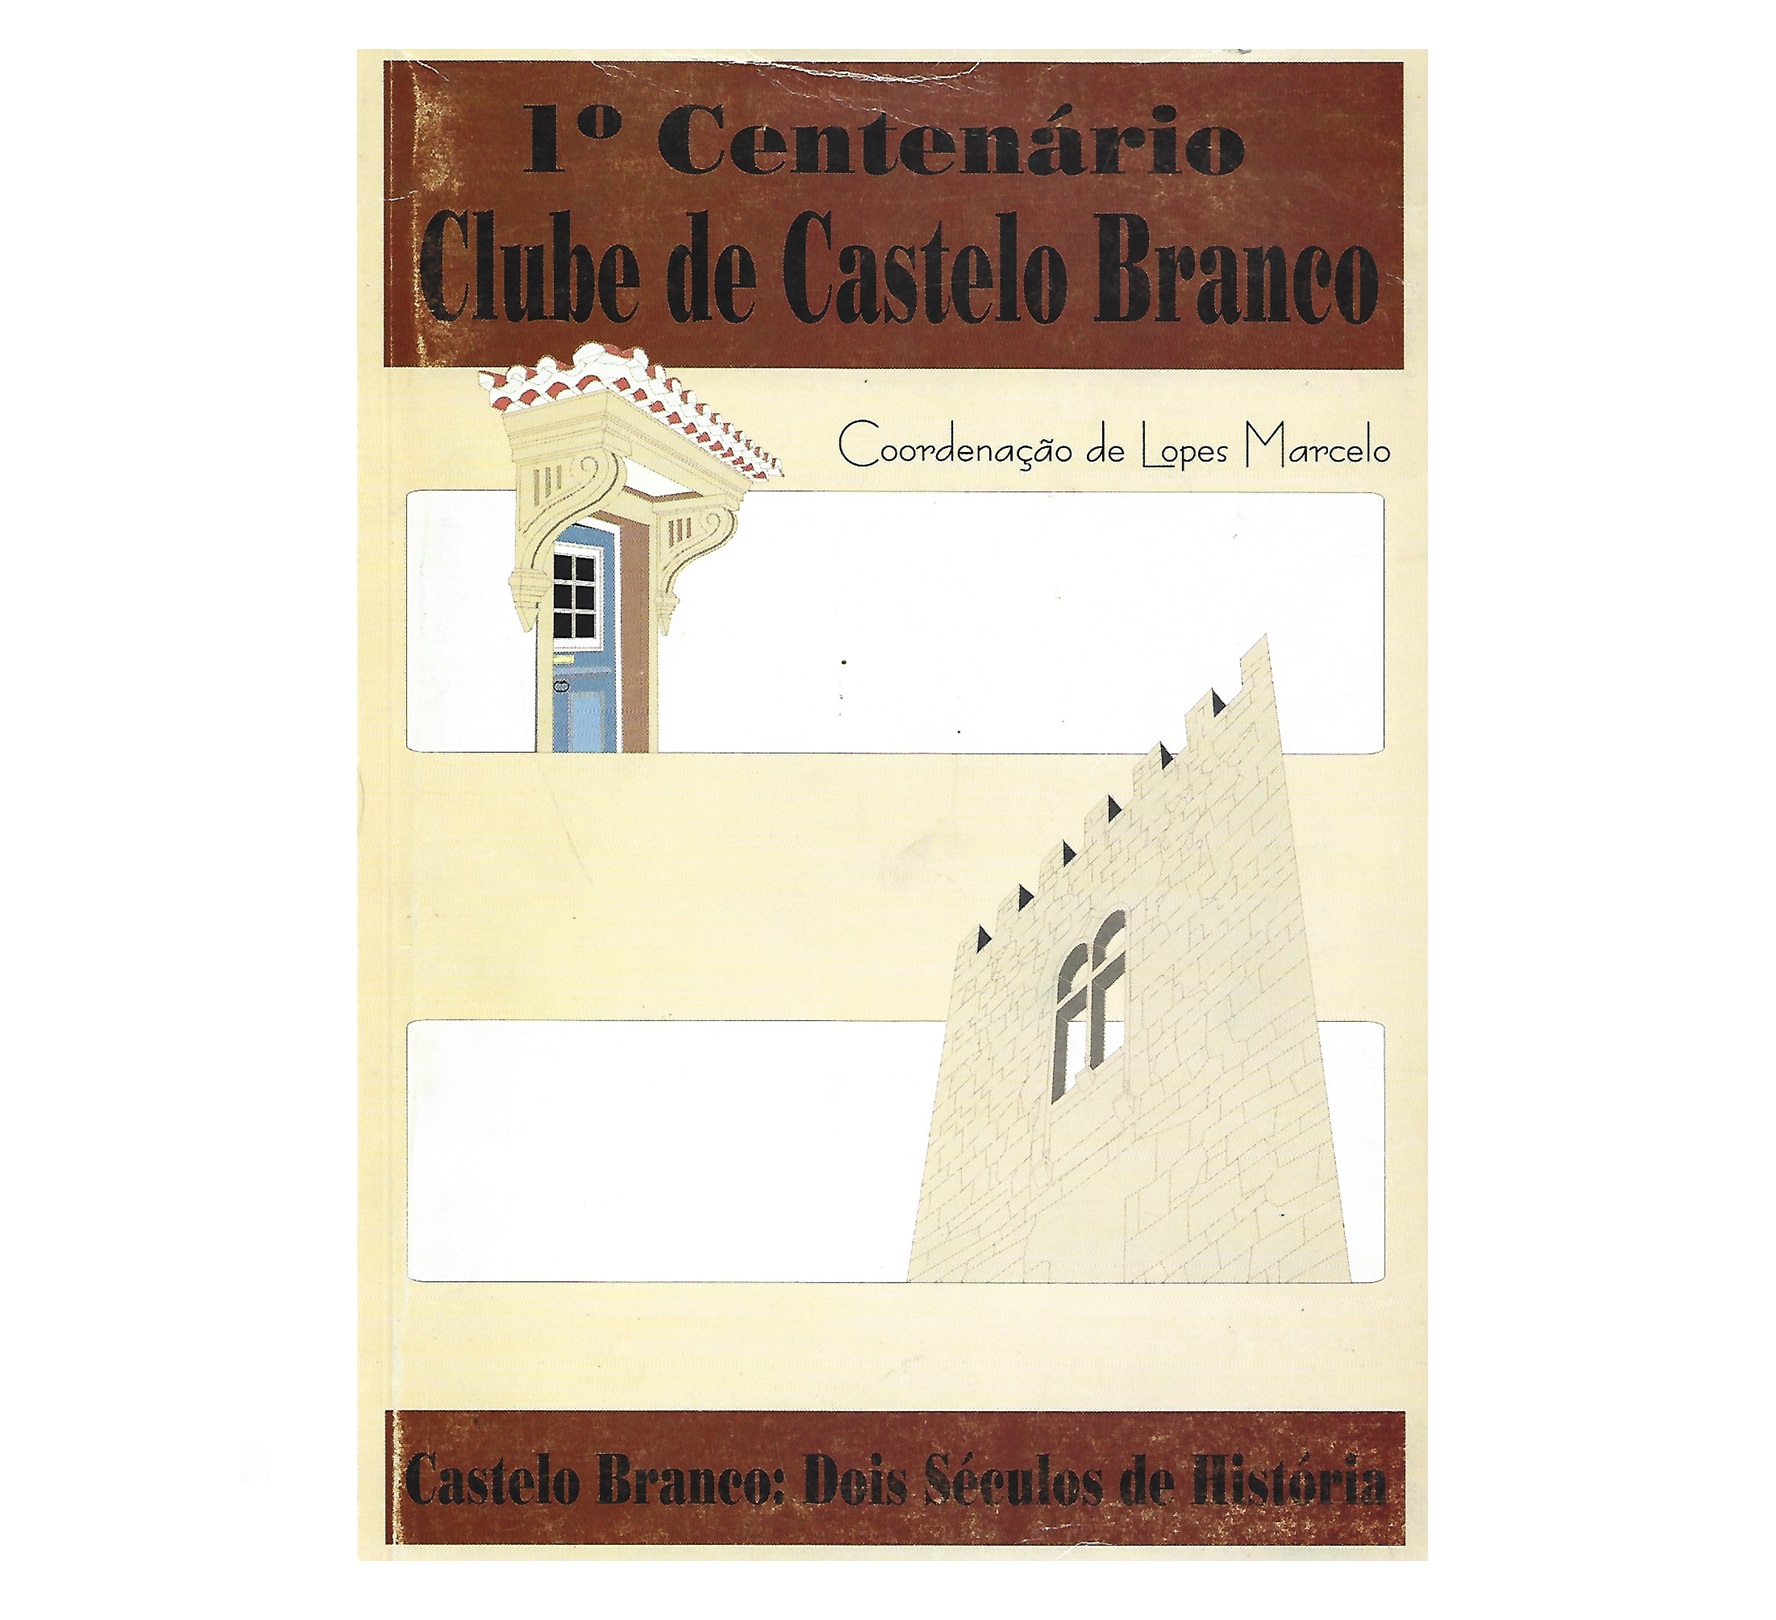 CASTELO BRANCO: DOIS SÉCULOS DE HISTÓRIA